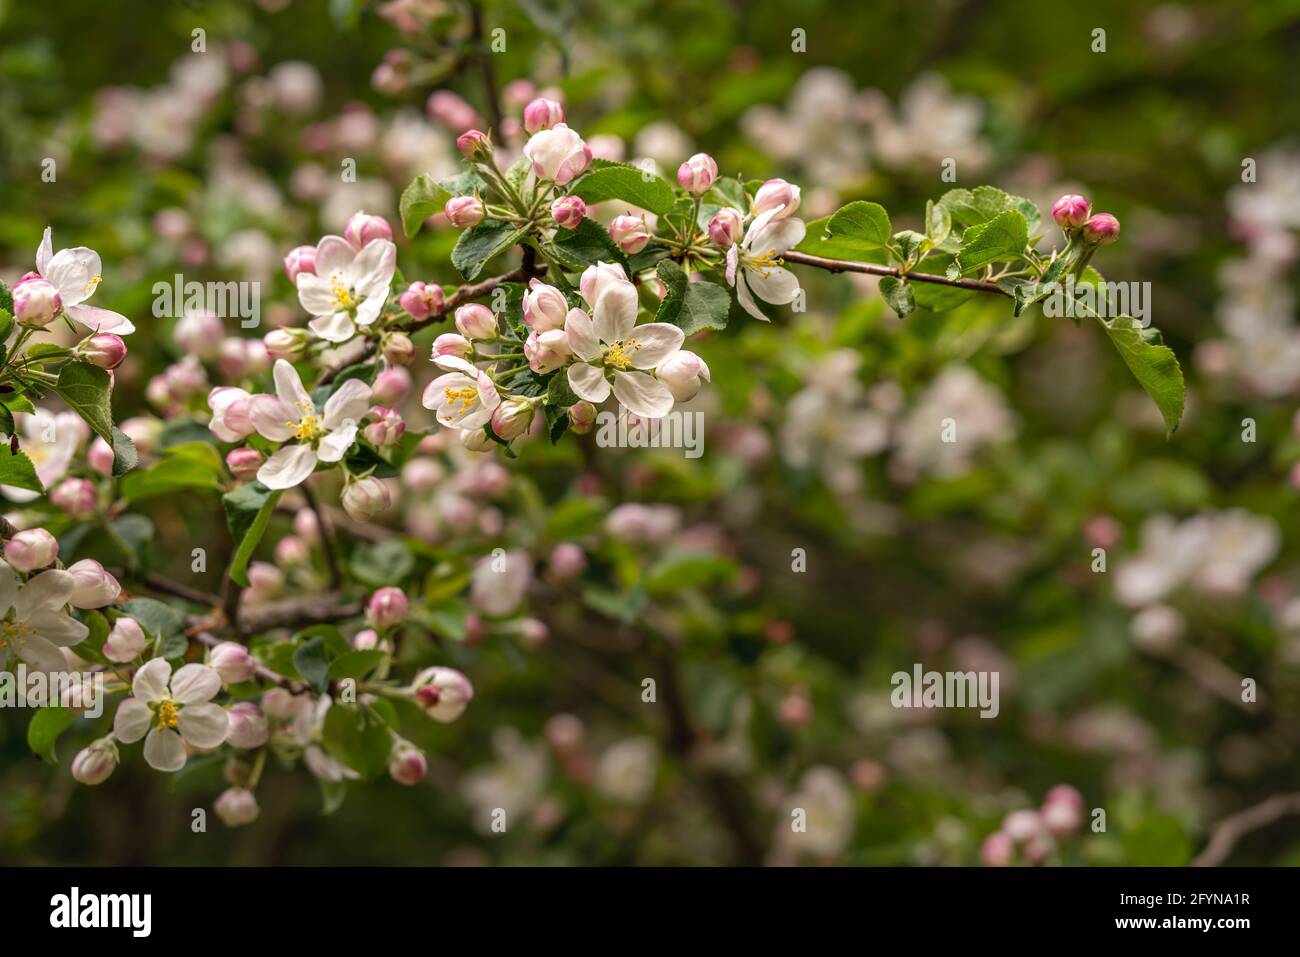 Detail des blühenden wilden Apfelbaums, Malus sylvestris, mit weißen Blüten mit einem rosa Farbton. Abruzzen, Italien, Europa Stockfoto